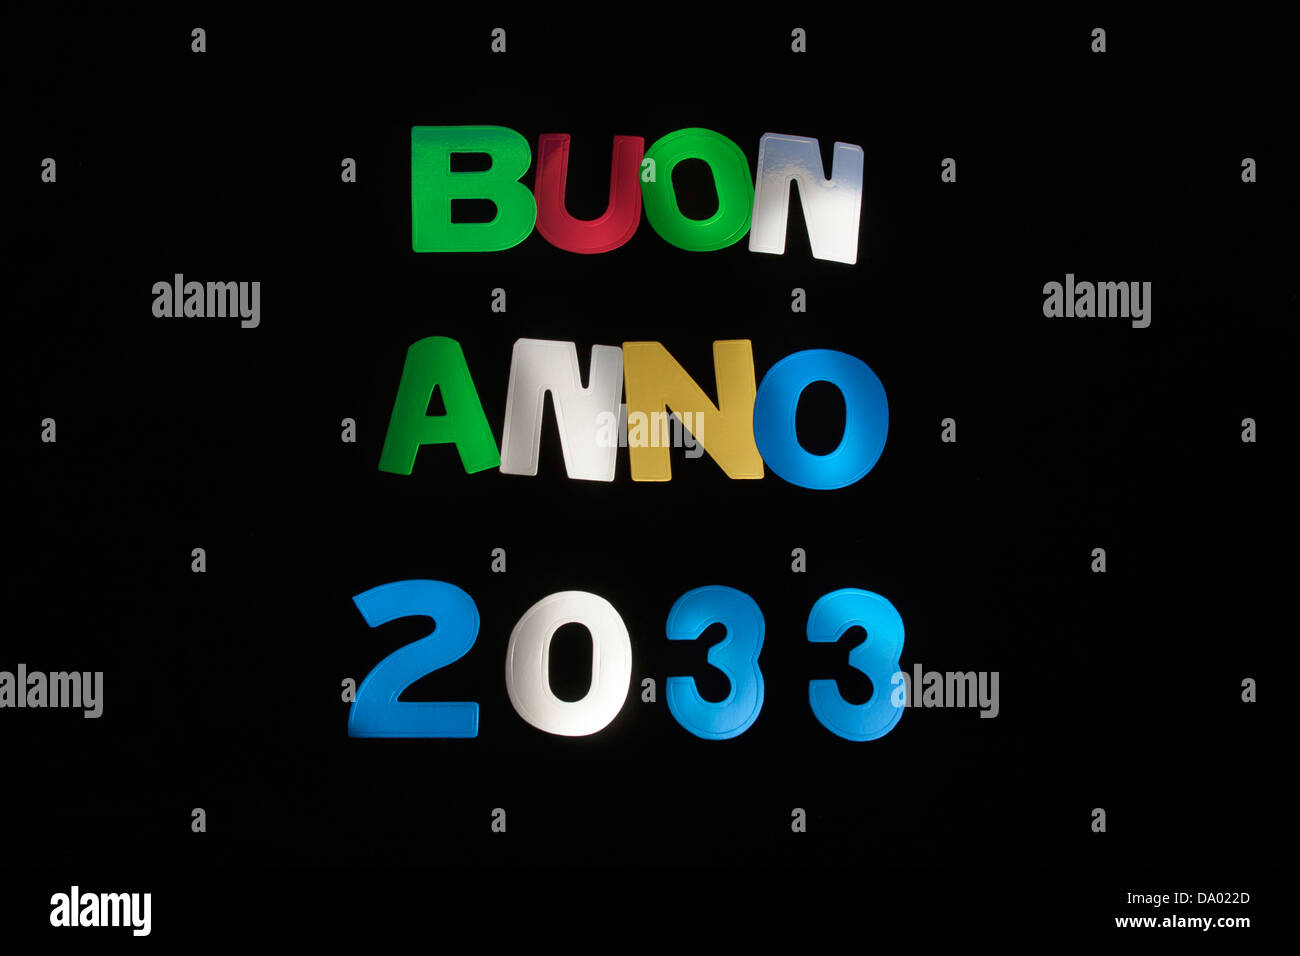 BUON ANNO 2033 Stock Photo